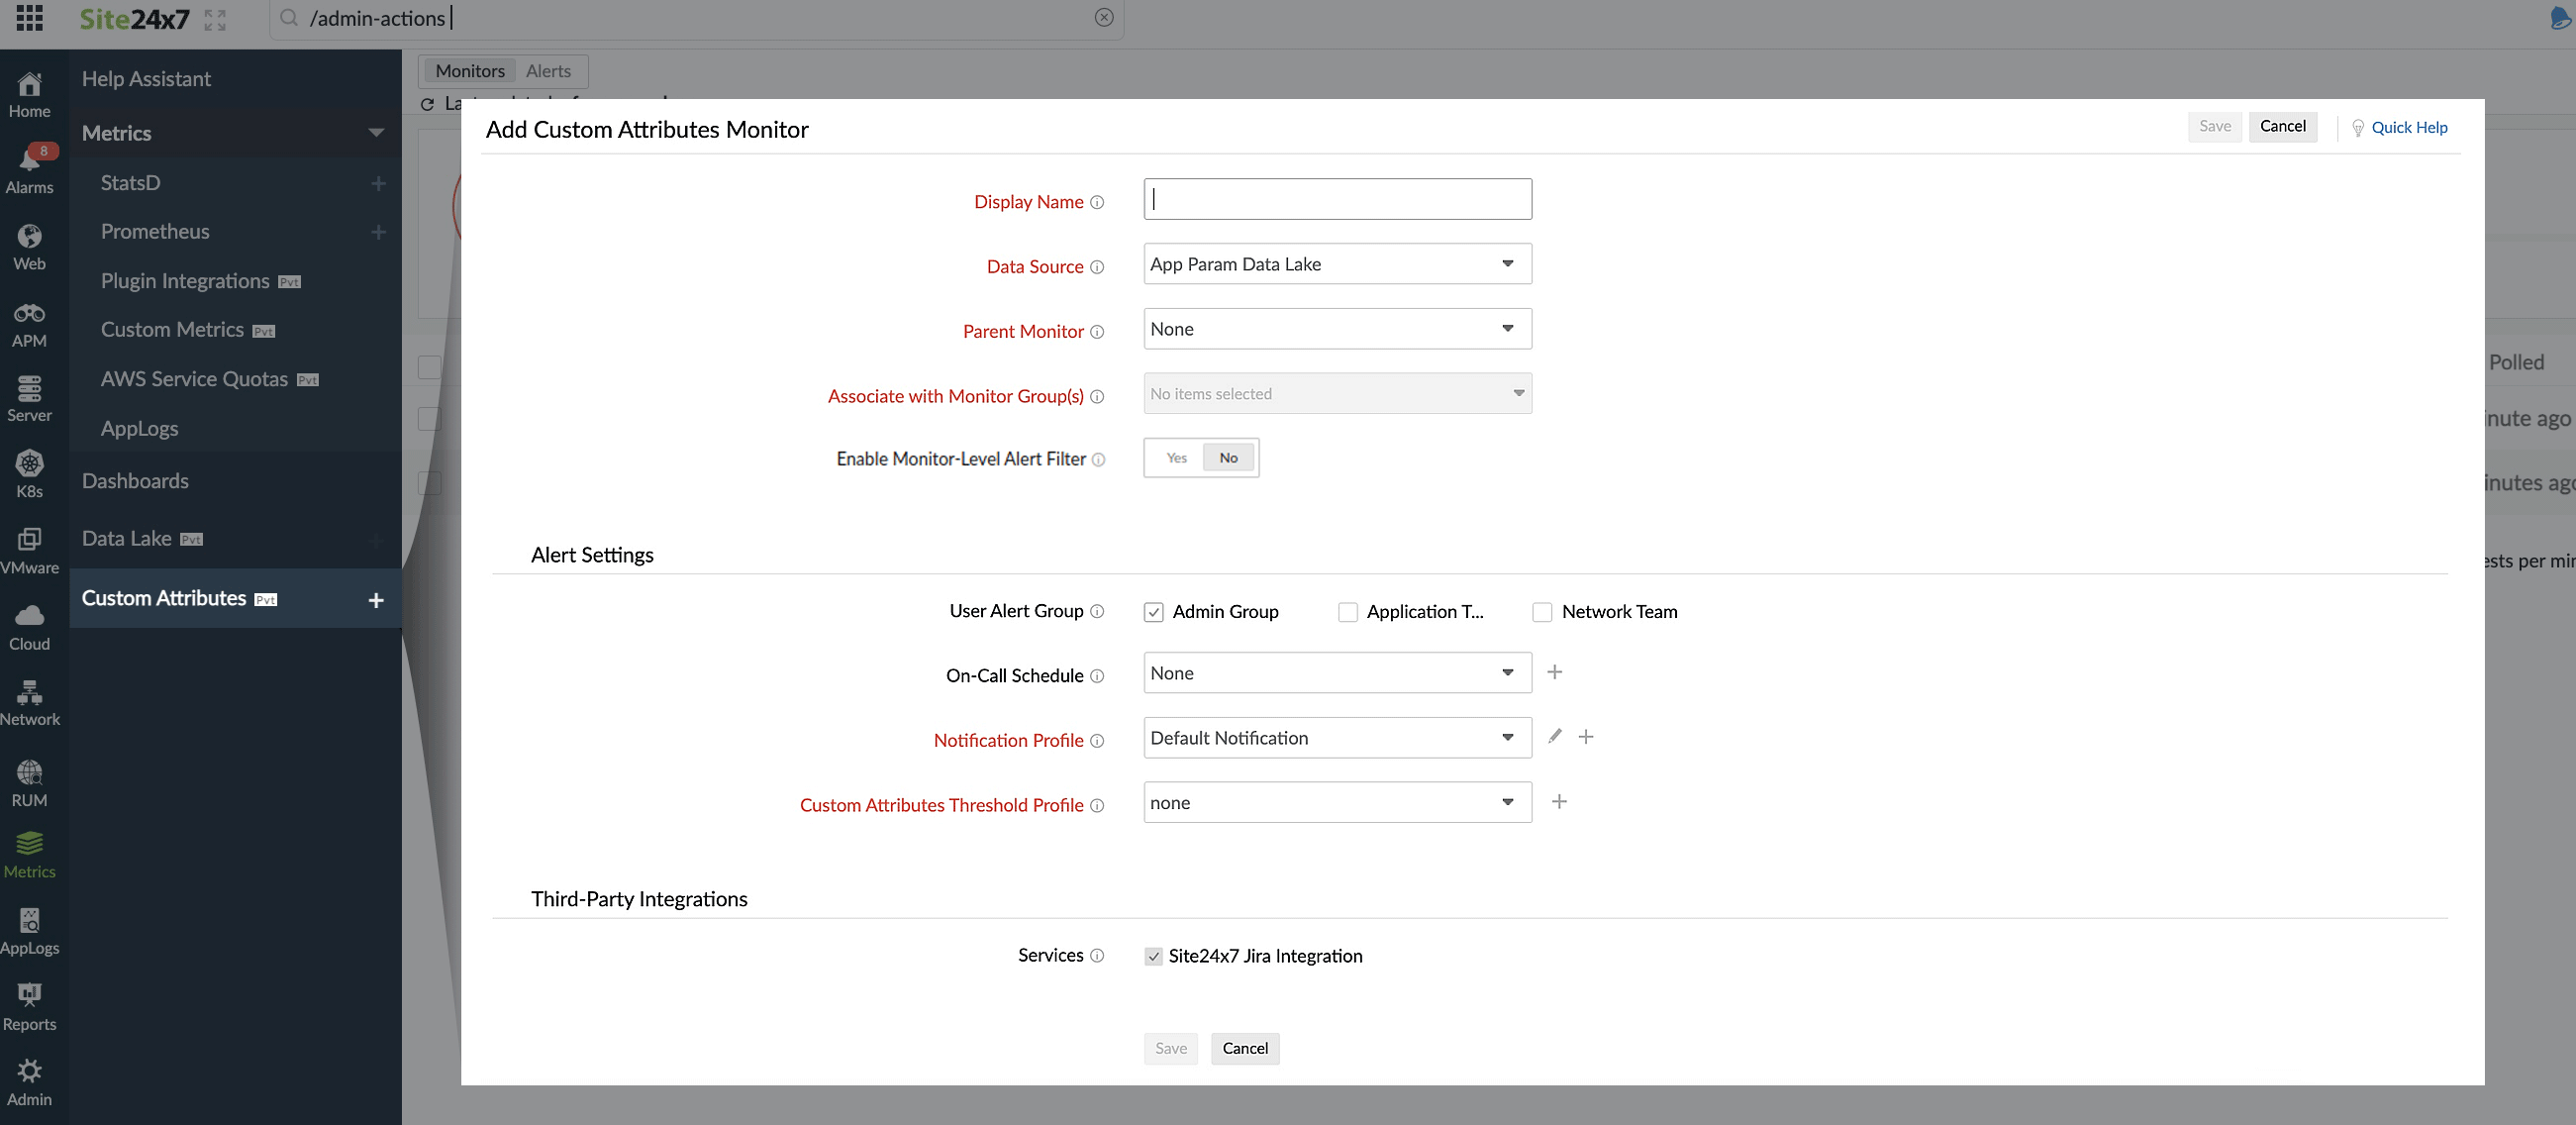 Add a custom attributes monitor